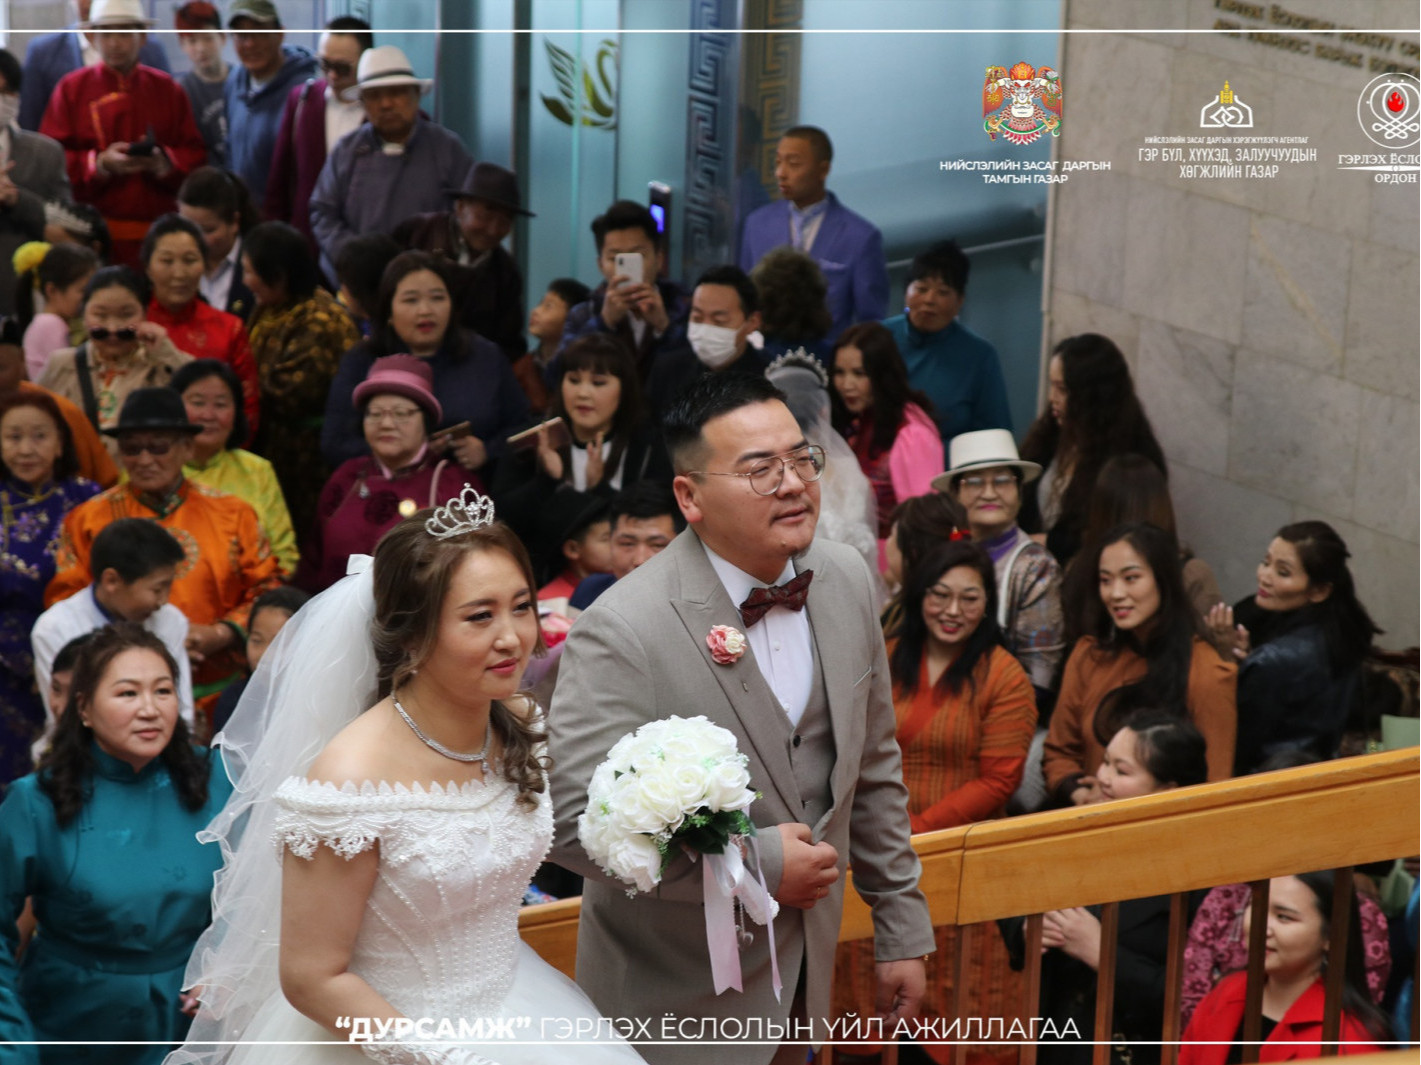 Монгол улсад өдөрт 44 хос гэрлэлтээ бүртгүүлдэг байна